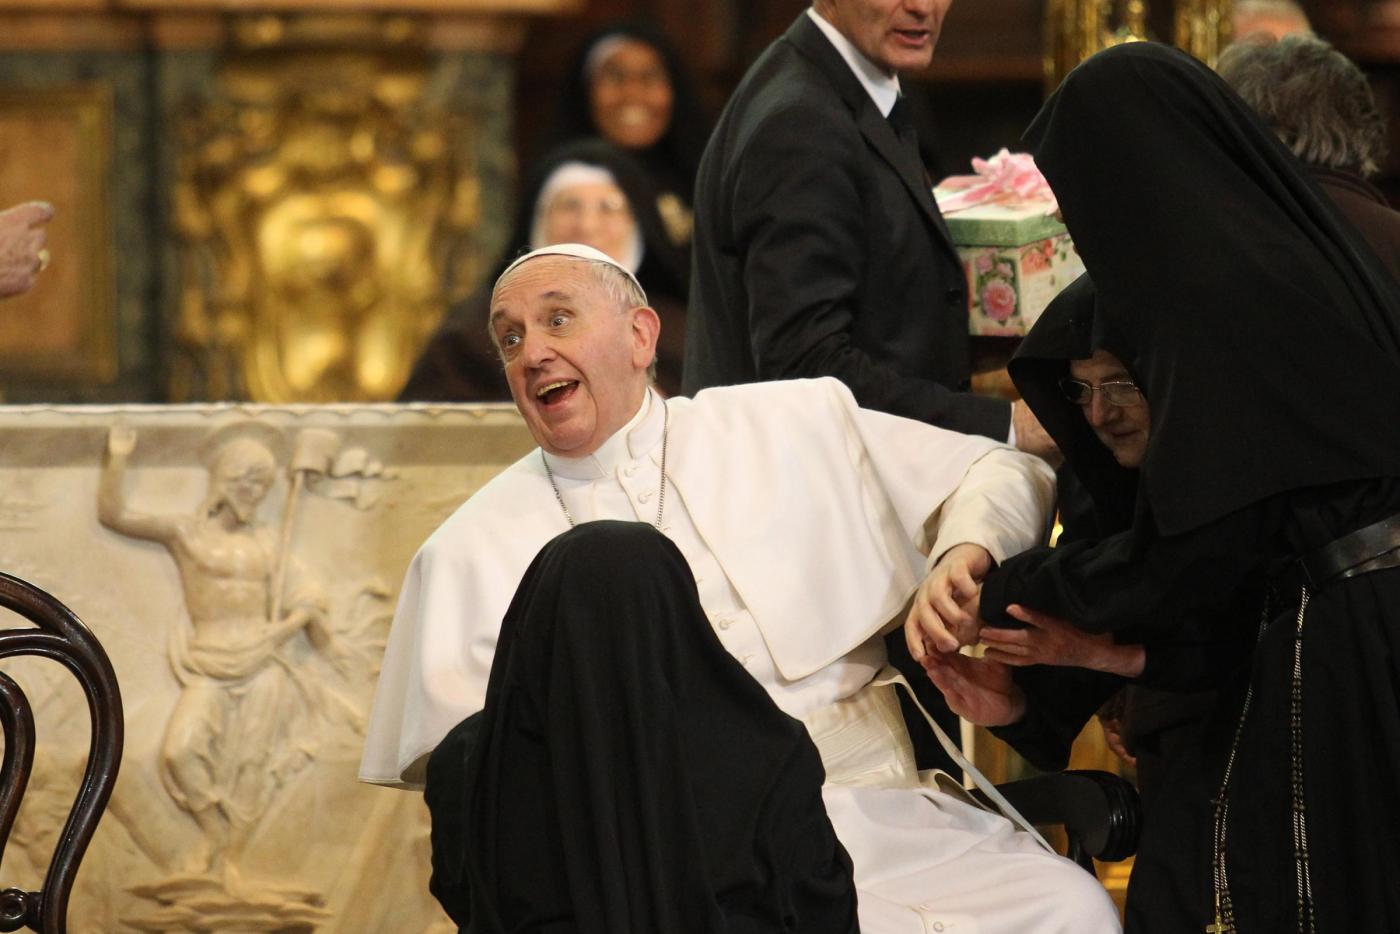 Papa Francesco, parlano le suore di clausura: «non abbiamo saputo resistergli»